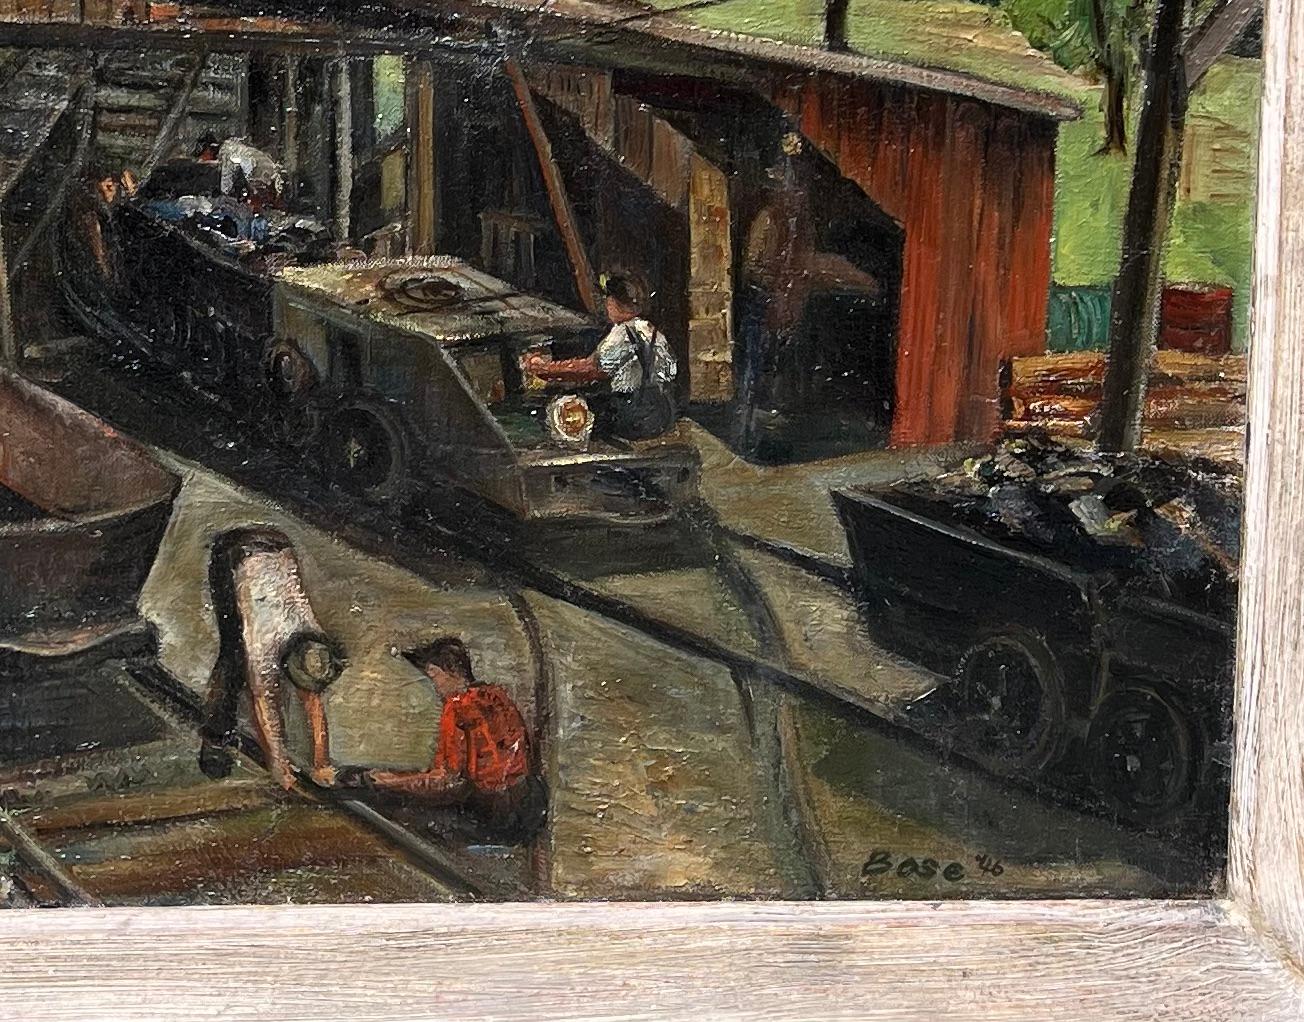 Industrielle Eisenbahn WPA Mitte des 20. Jahrhunderts Amerikanische Szene Ländlicher moderner Realismus

Großes Genrebild in Öl auf Leinwand, das Arbeiter bei der Arbeit an einer Eisenbahn zeigt, mit einer ländlichen Landschaft im Hintergrund unter